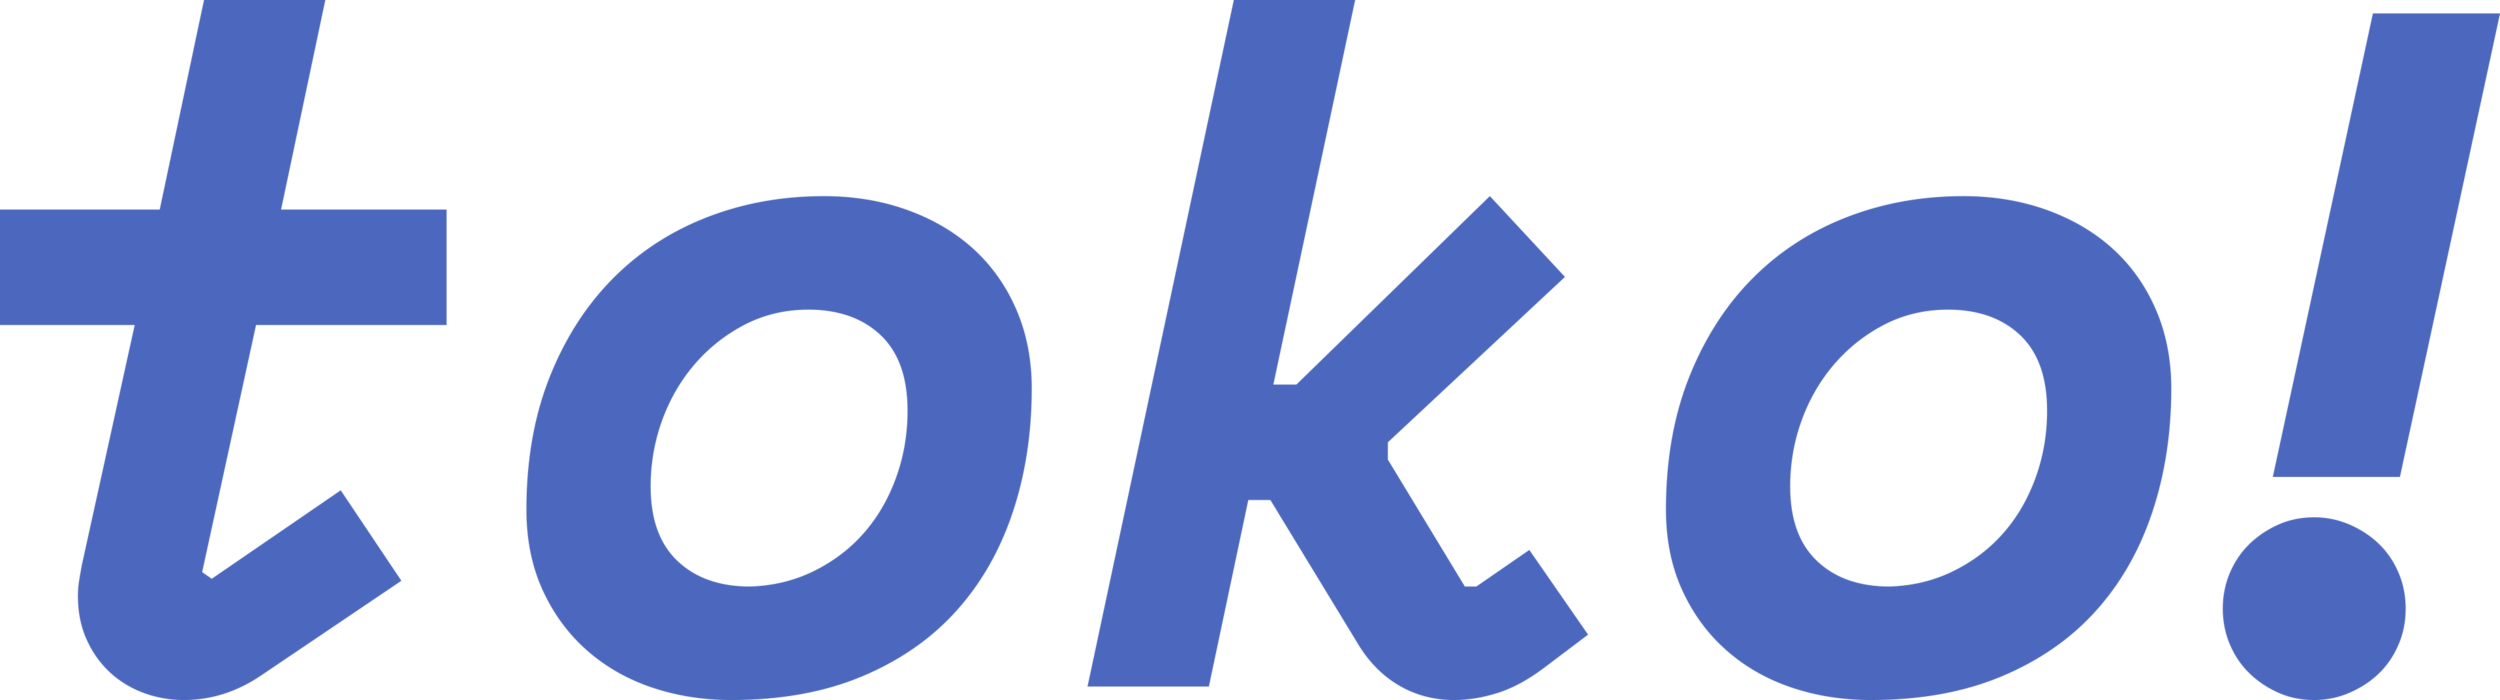 Toko Logo.png